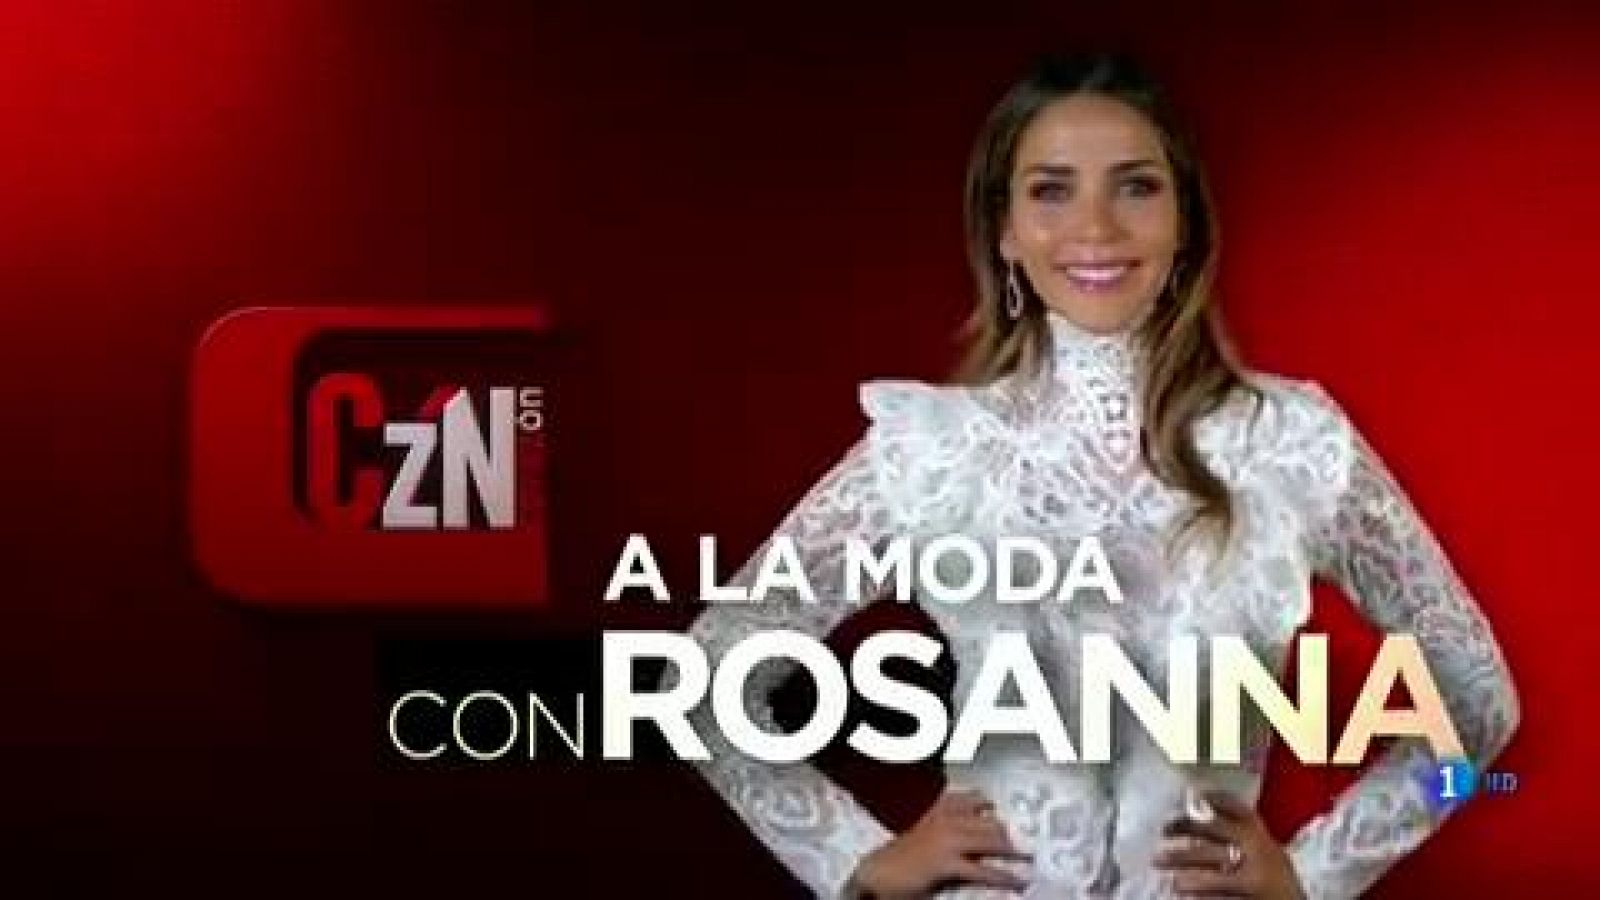 Corazón - A la moda con Rosanna: ¿Cómo escoger el mejor complemento?